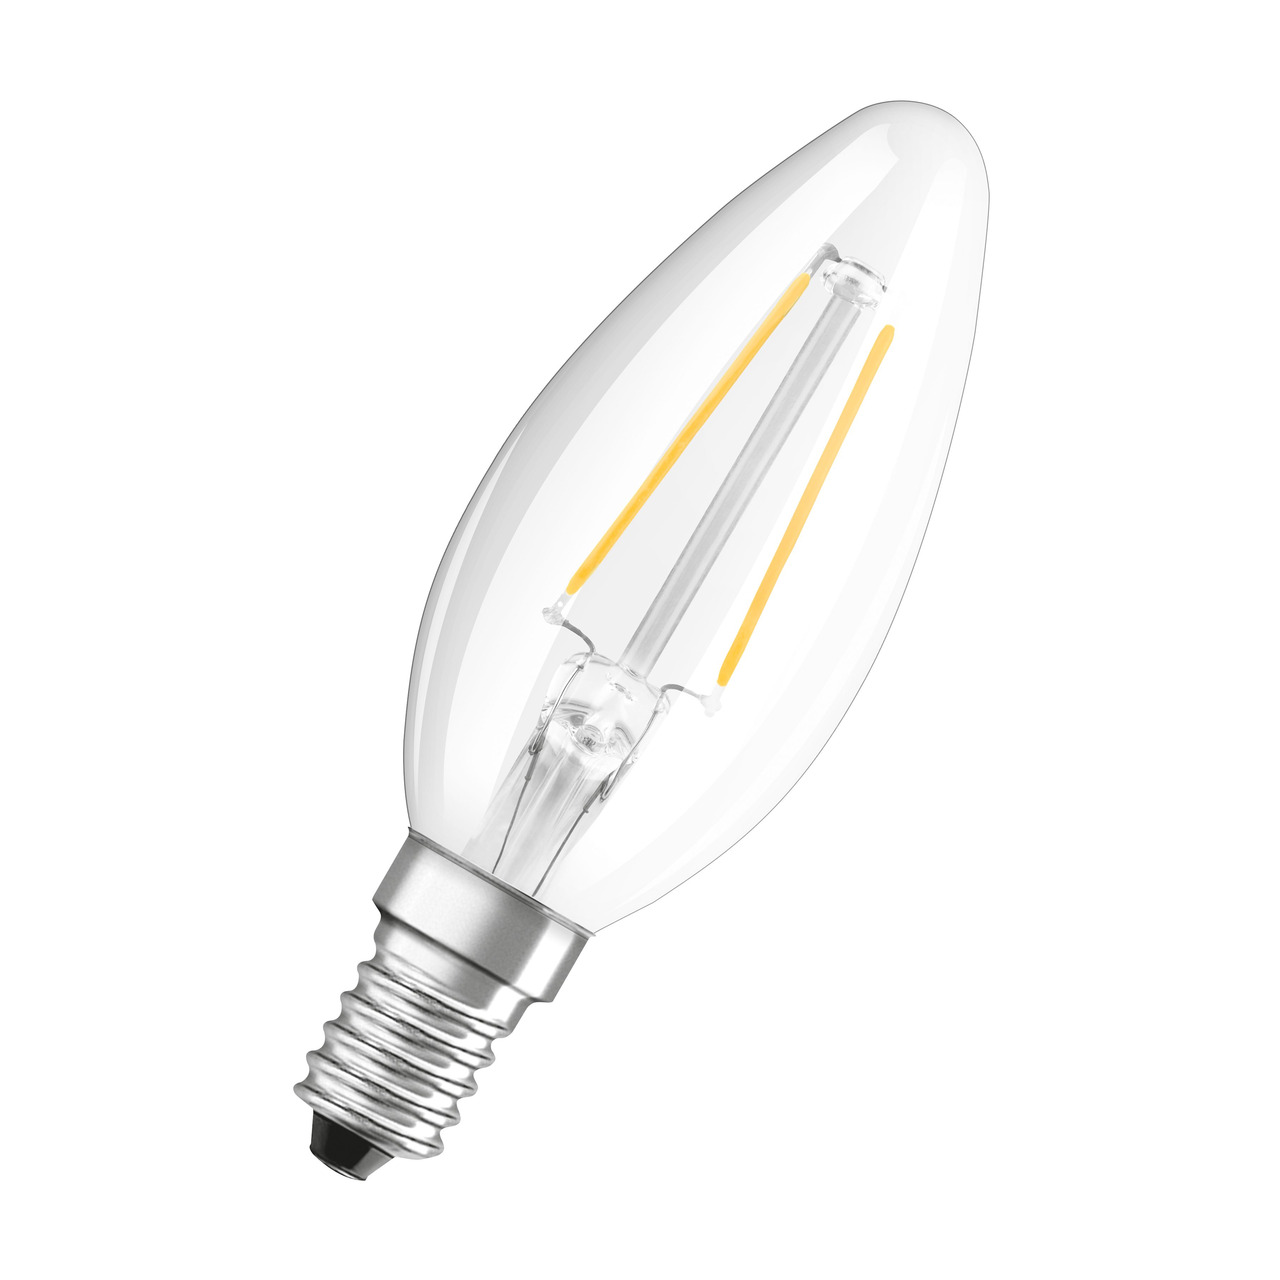 OSRAM 2-8-W-LED-Kerzenlampe- E14- 250 lm- warmweiss- klar- dimmbar unter Beleuchtung